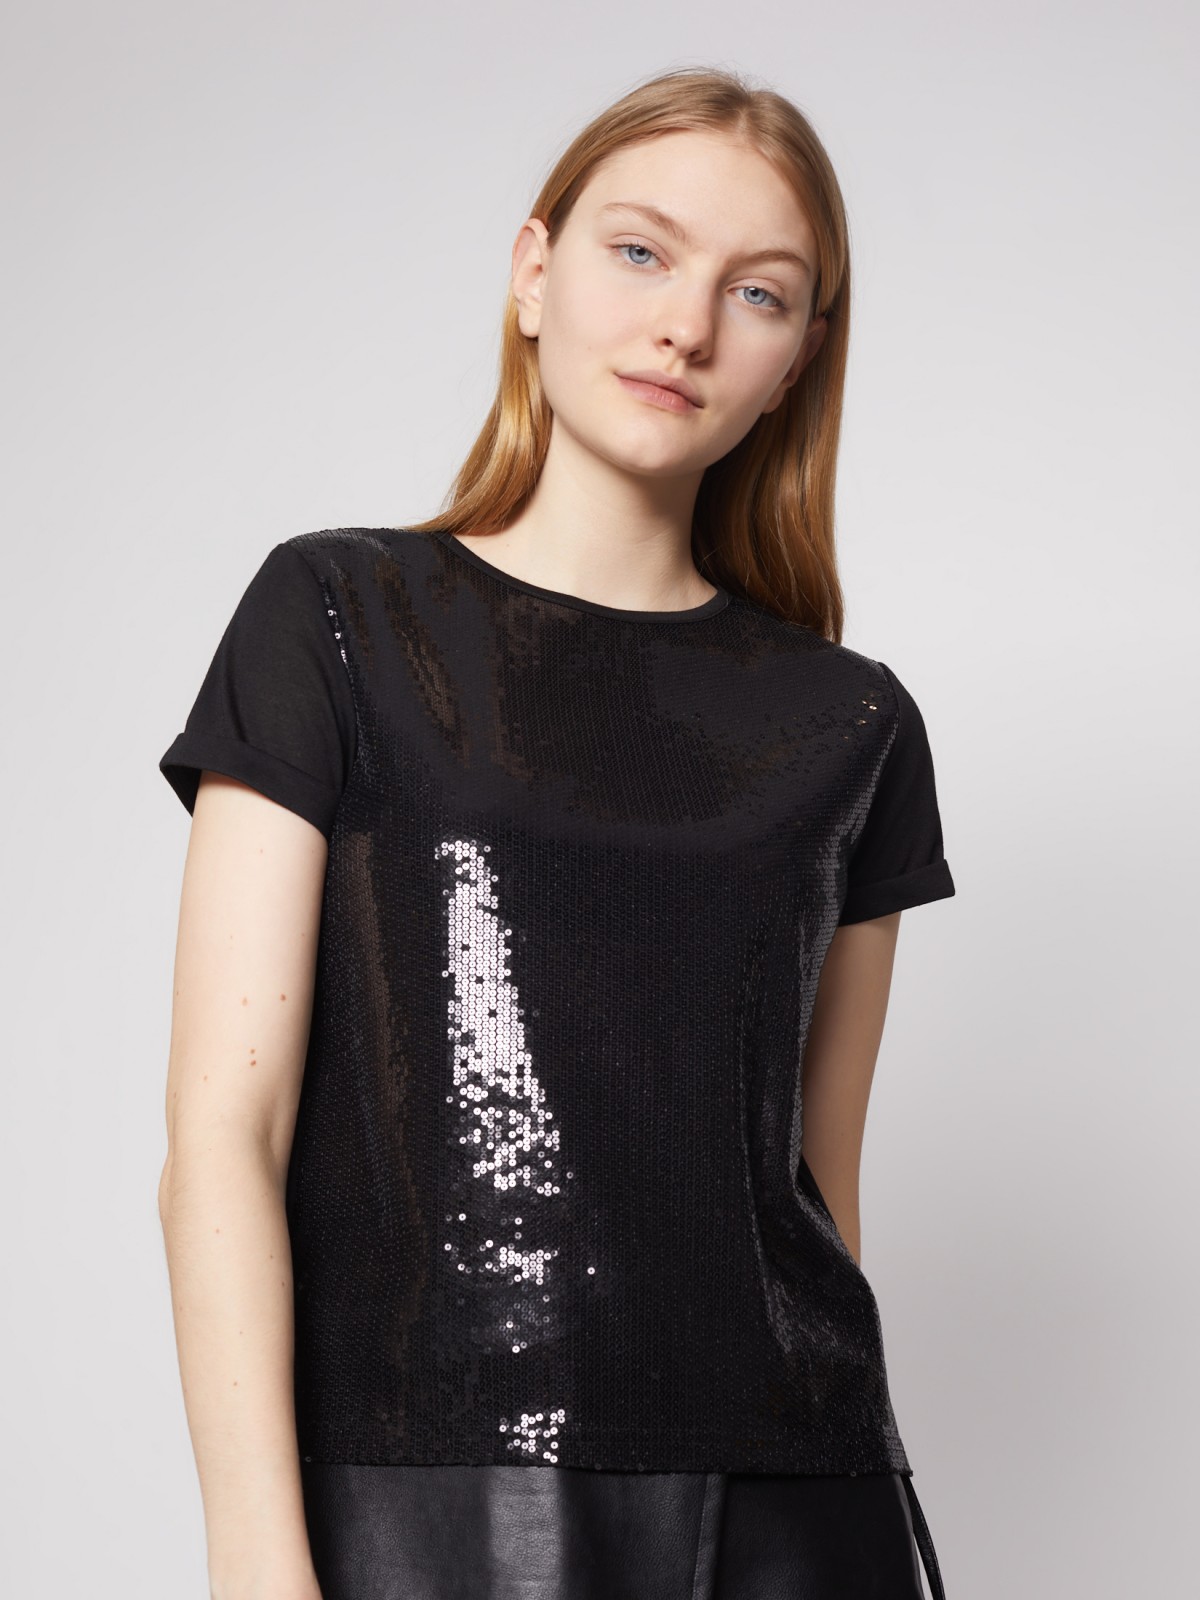 Женские футболки с пайетками или блестками — купить в интернет-магазине Ламода